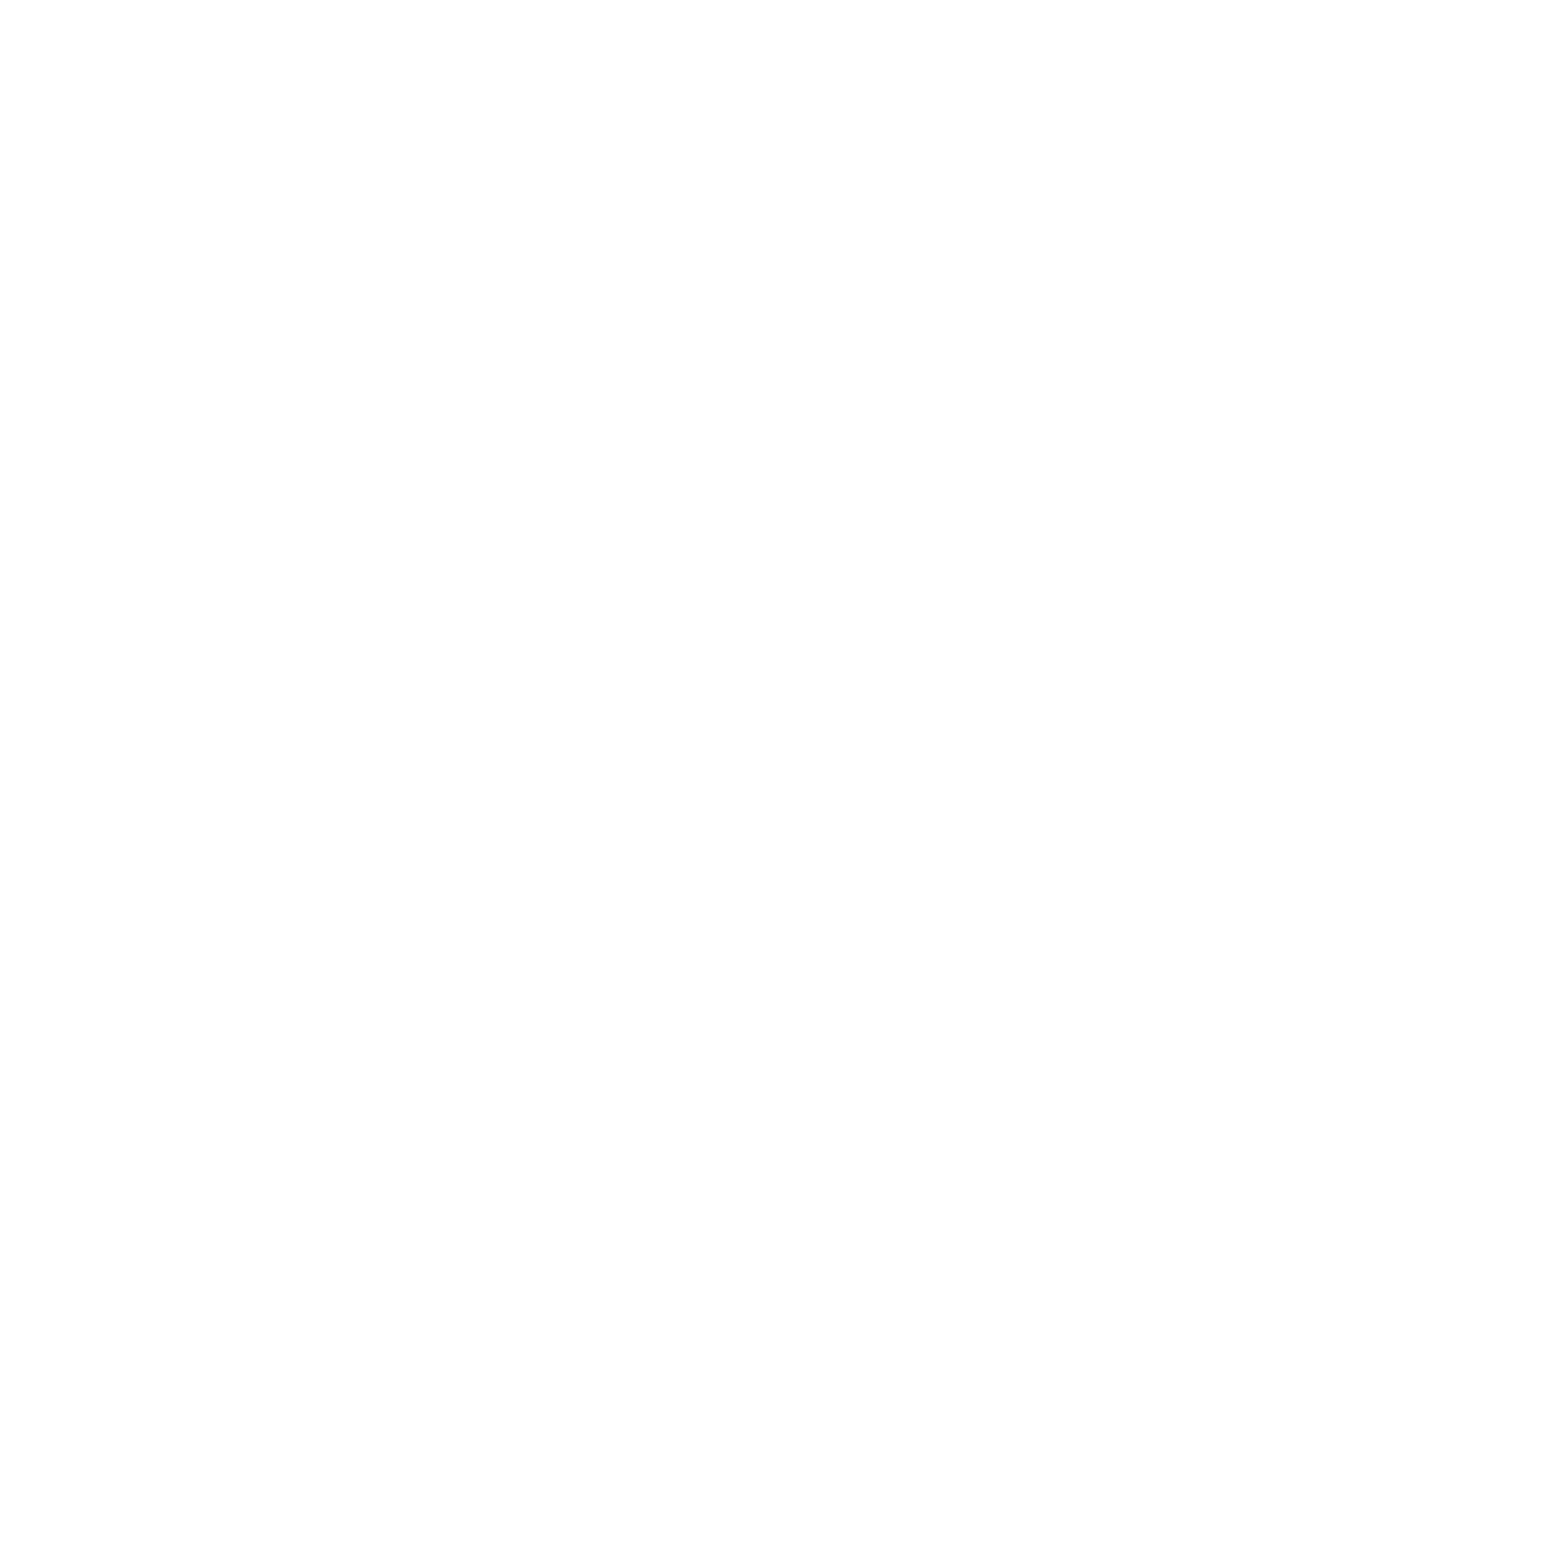 Vaxart logo for dark backgrounds (transparent PNG)